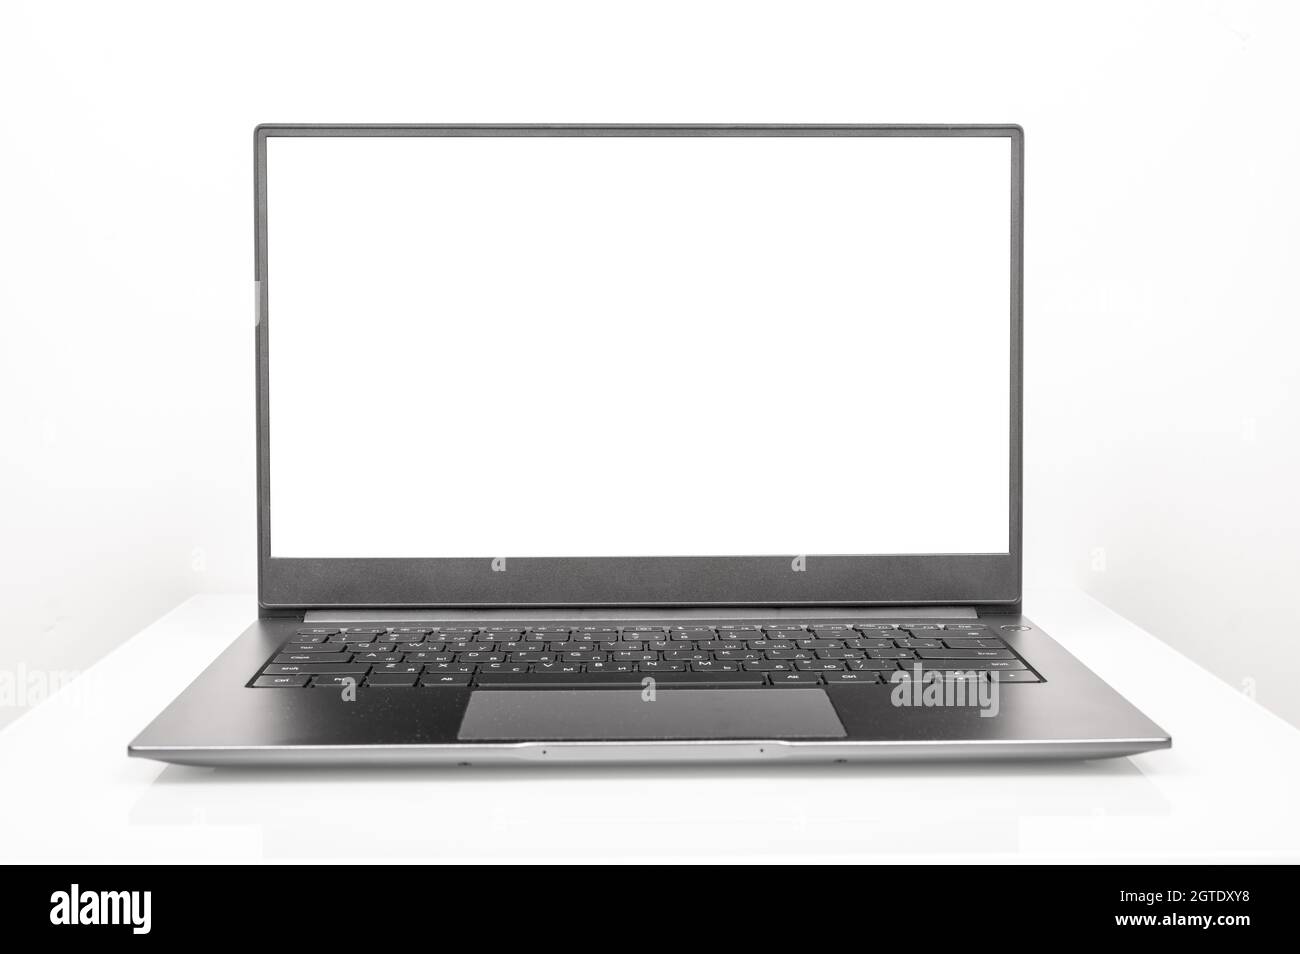 Nuovo notebook in alluminio lucido con schermo bianco su sfondo bianco.  Laptop con schermo vuoto in posizione frontale su sfondo bianco del tavolo.  Computer portatile color argento Foto stock - Alamy